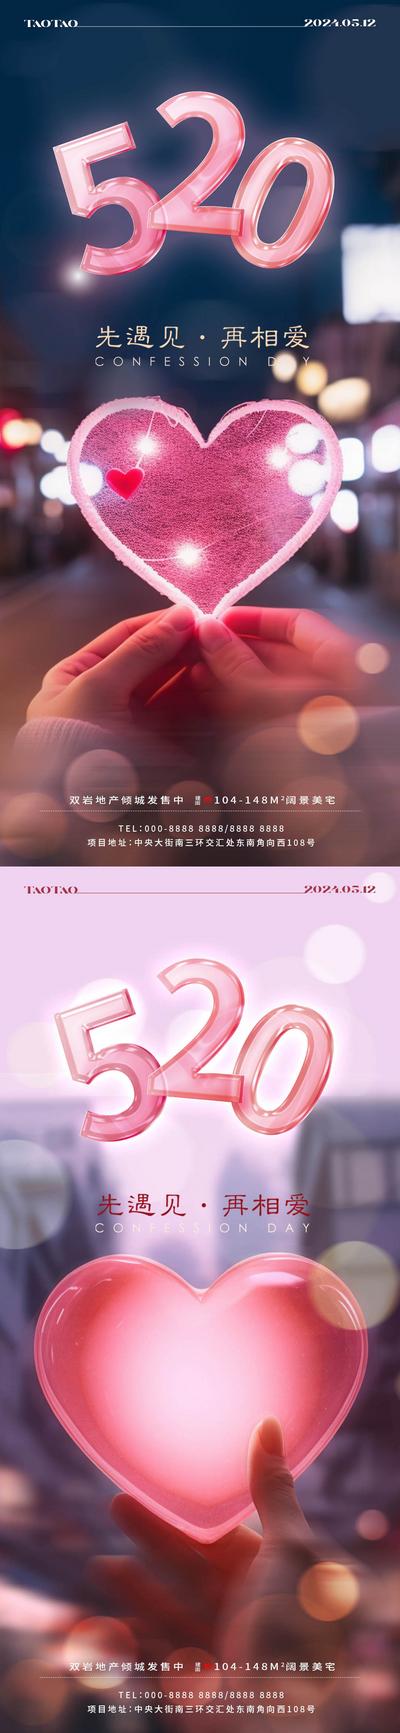 南门网 广告 海报 地产 情人节 节日 520 告白日 爱心 系列 心形